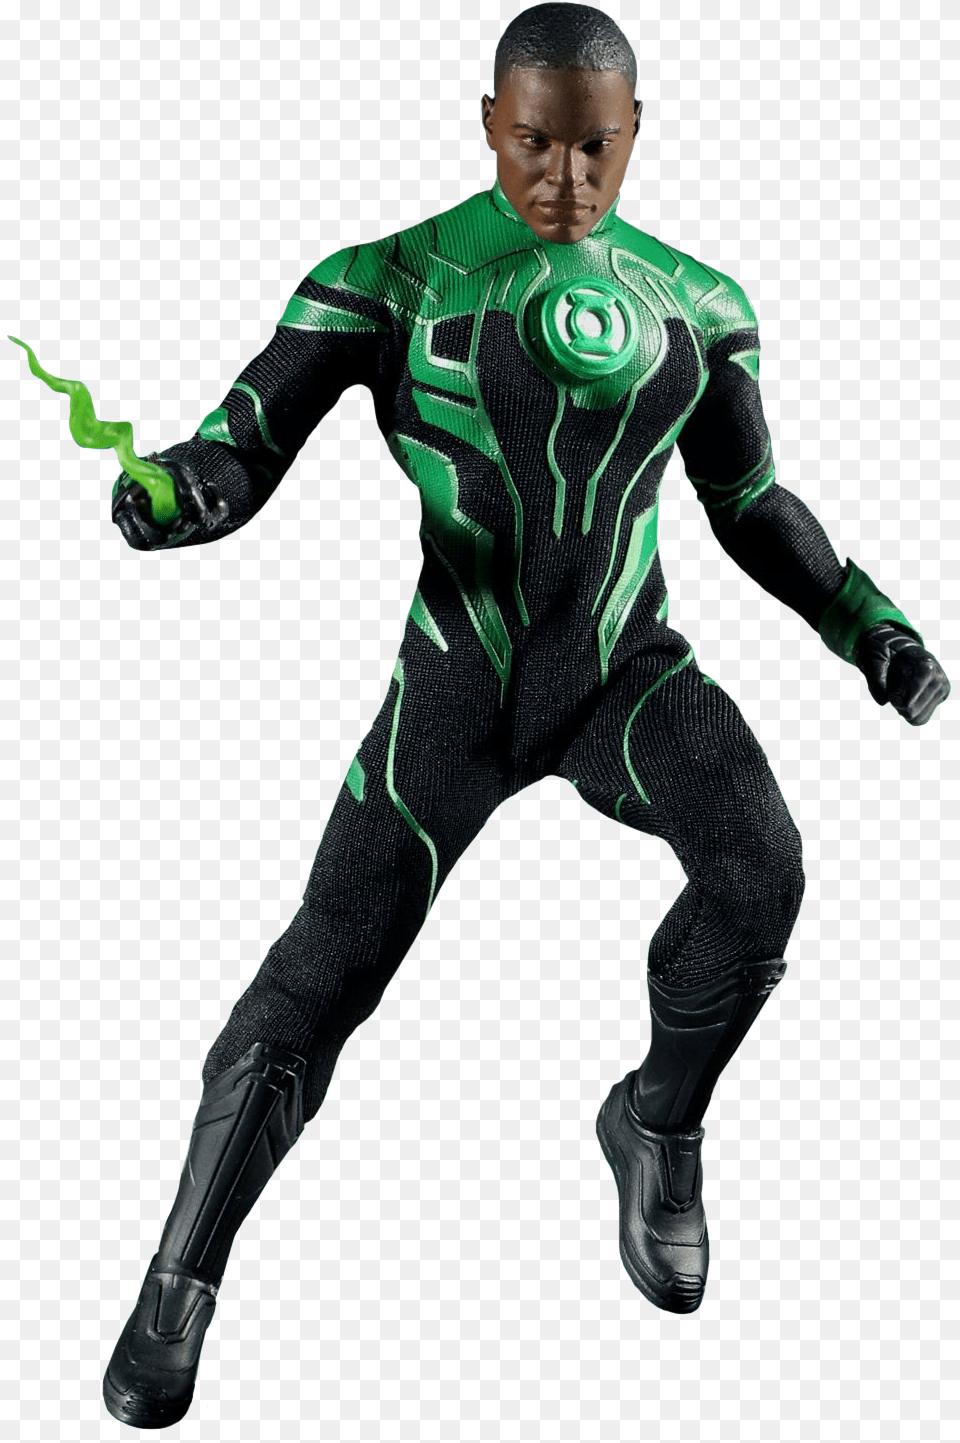 Green Lantern John Stewart, Boy, Child, Male, Person Free Transparent Png